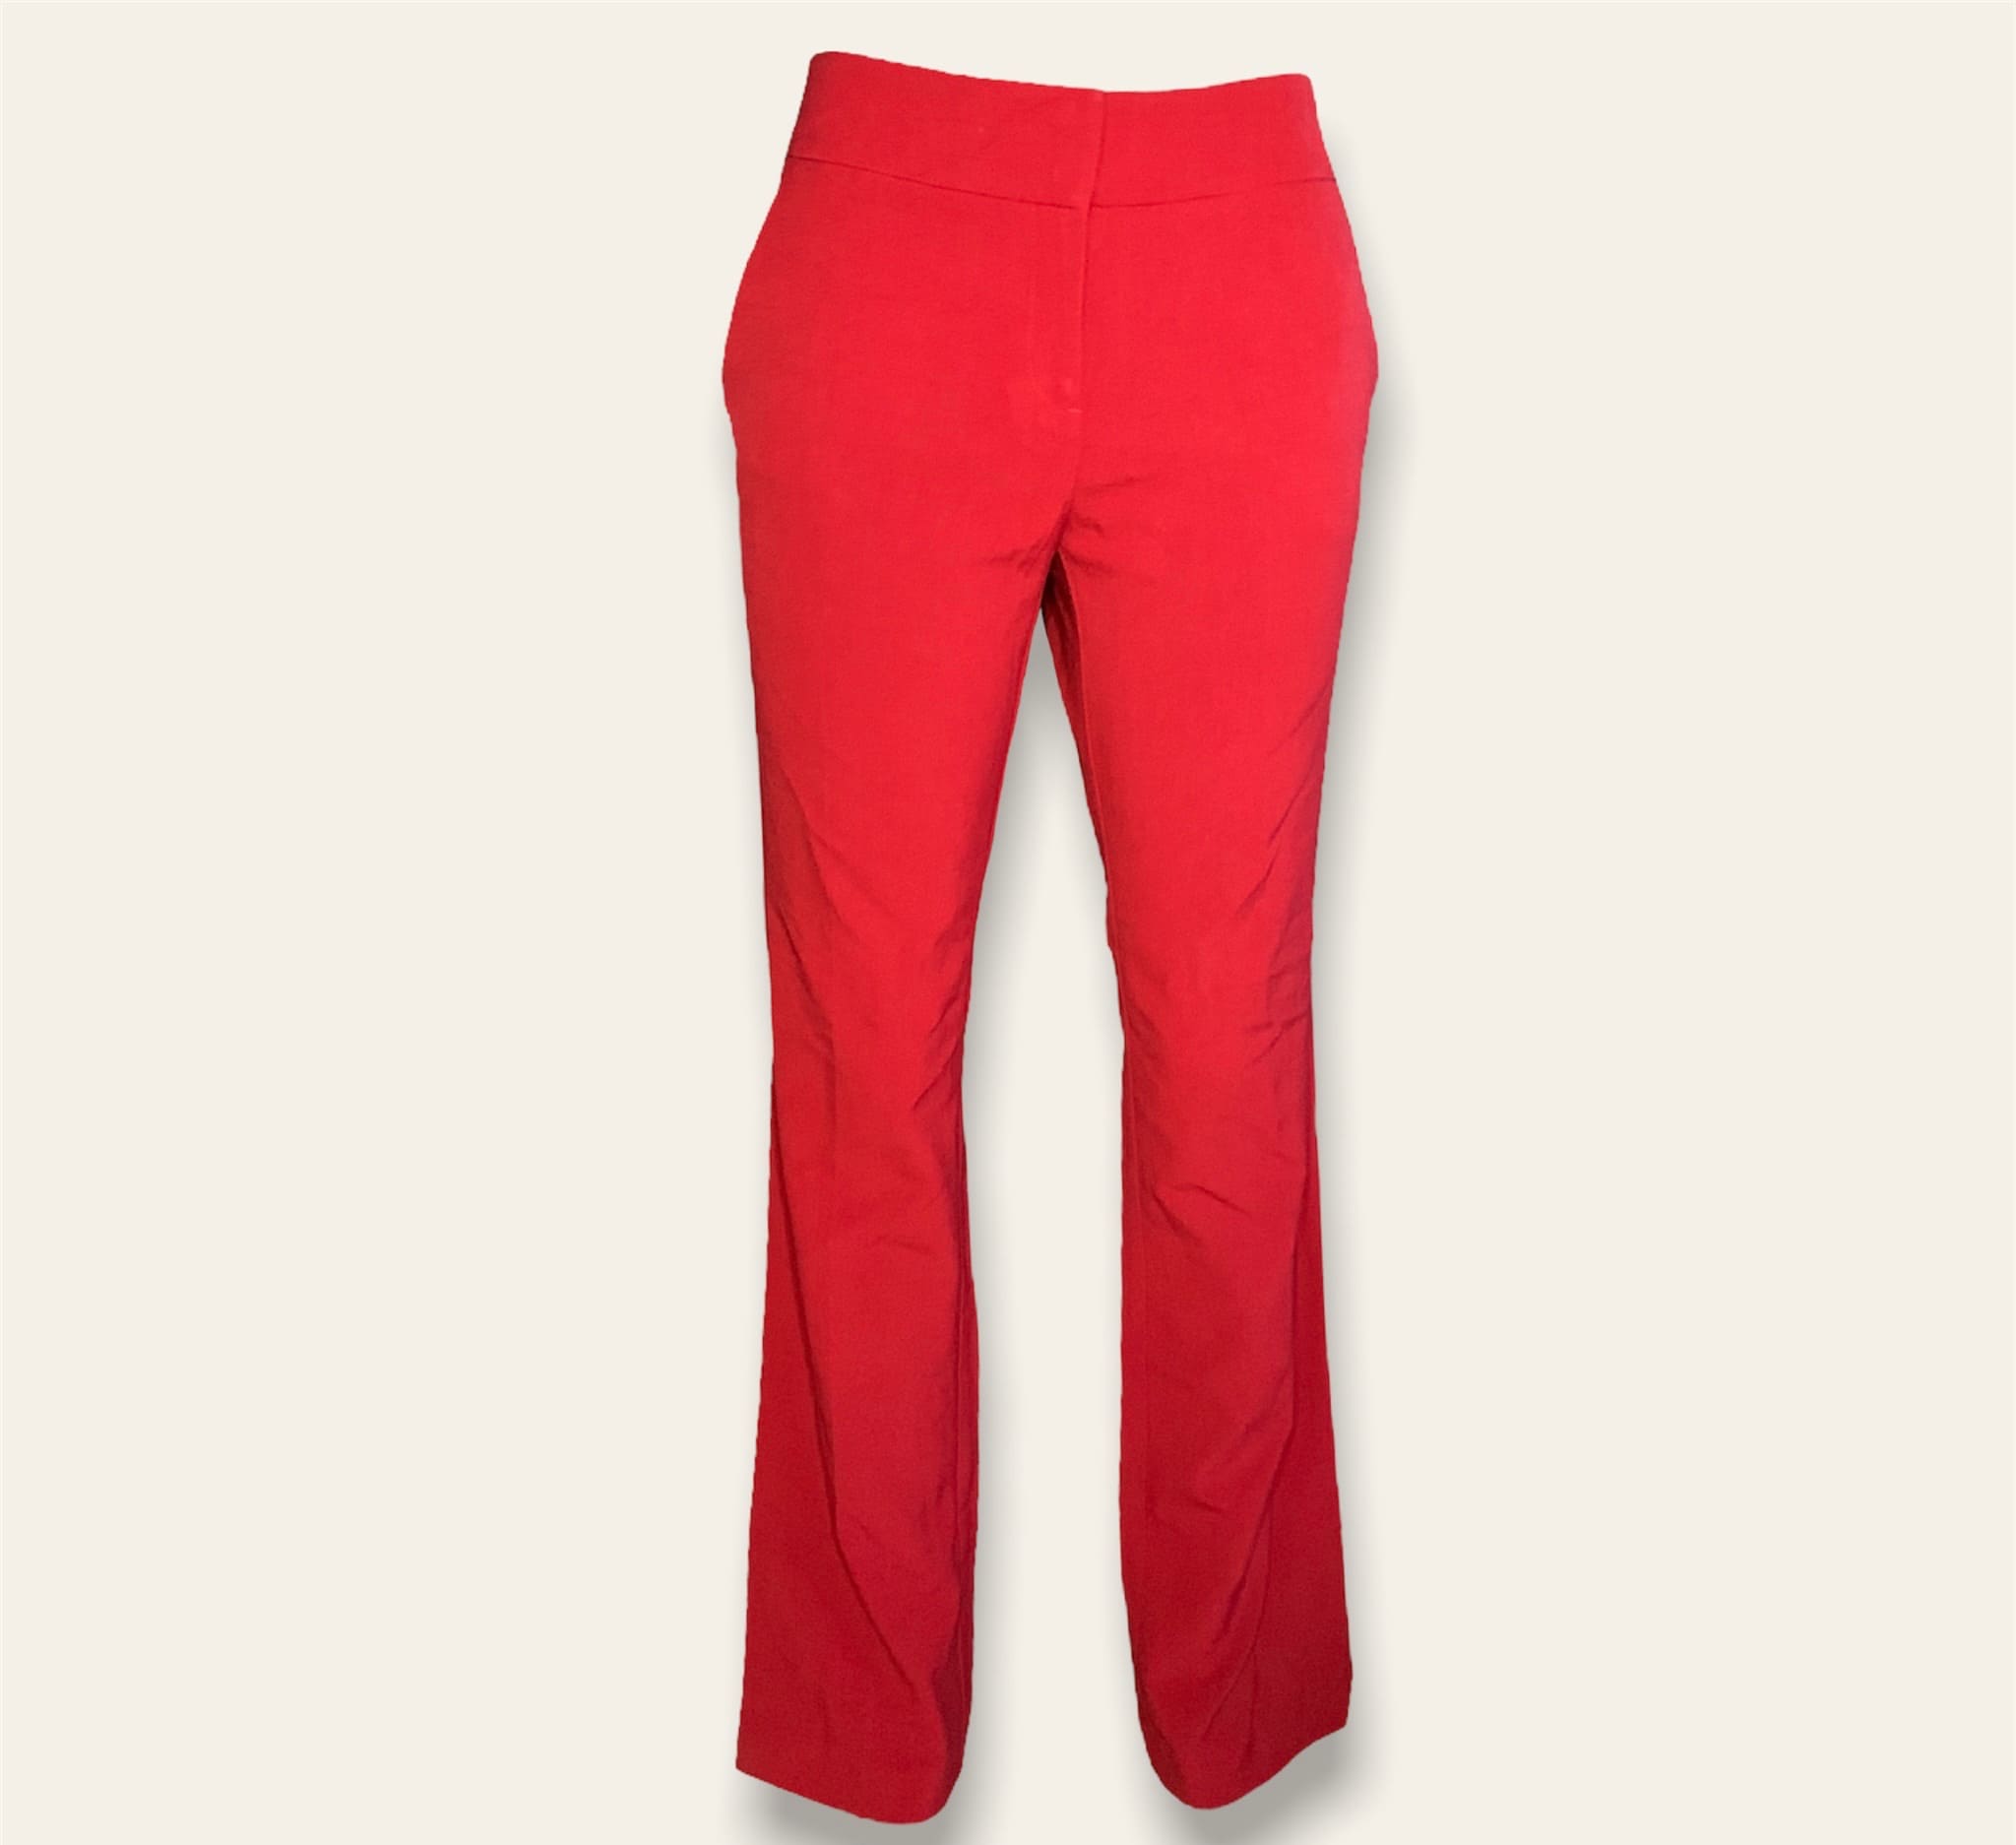 Pantalón de vestir acampanado pantalon de vestir rojo mujer - Glow Fashion